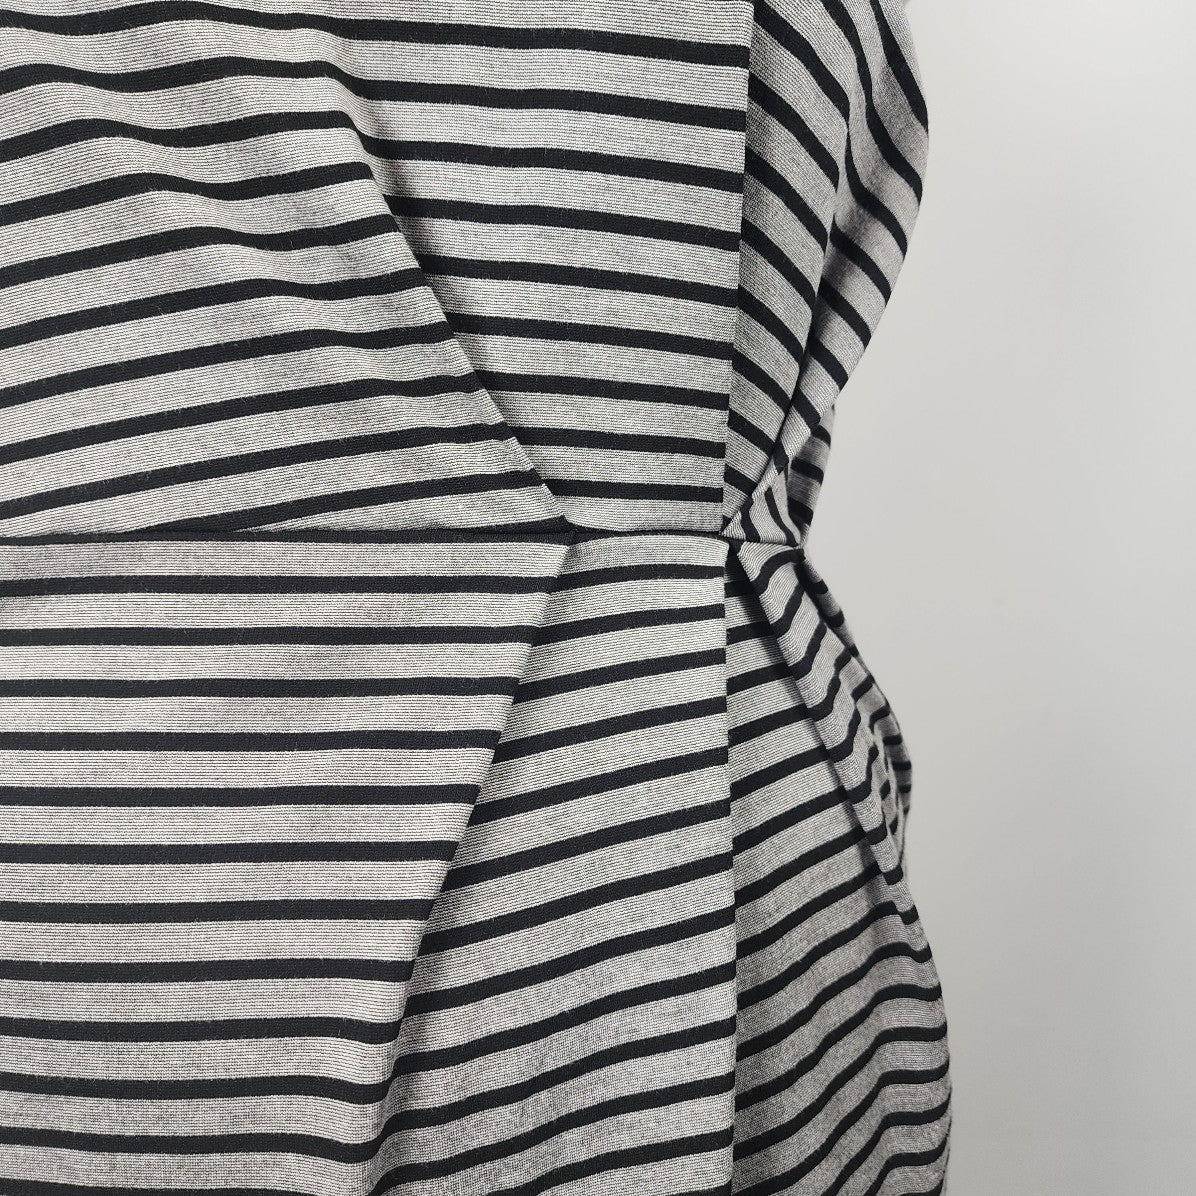 Pleione Grey Striped Sheath Sleeveless Dress Size XL